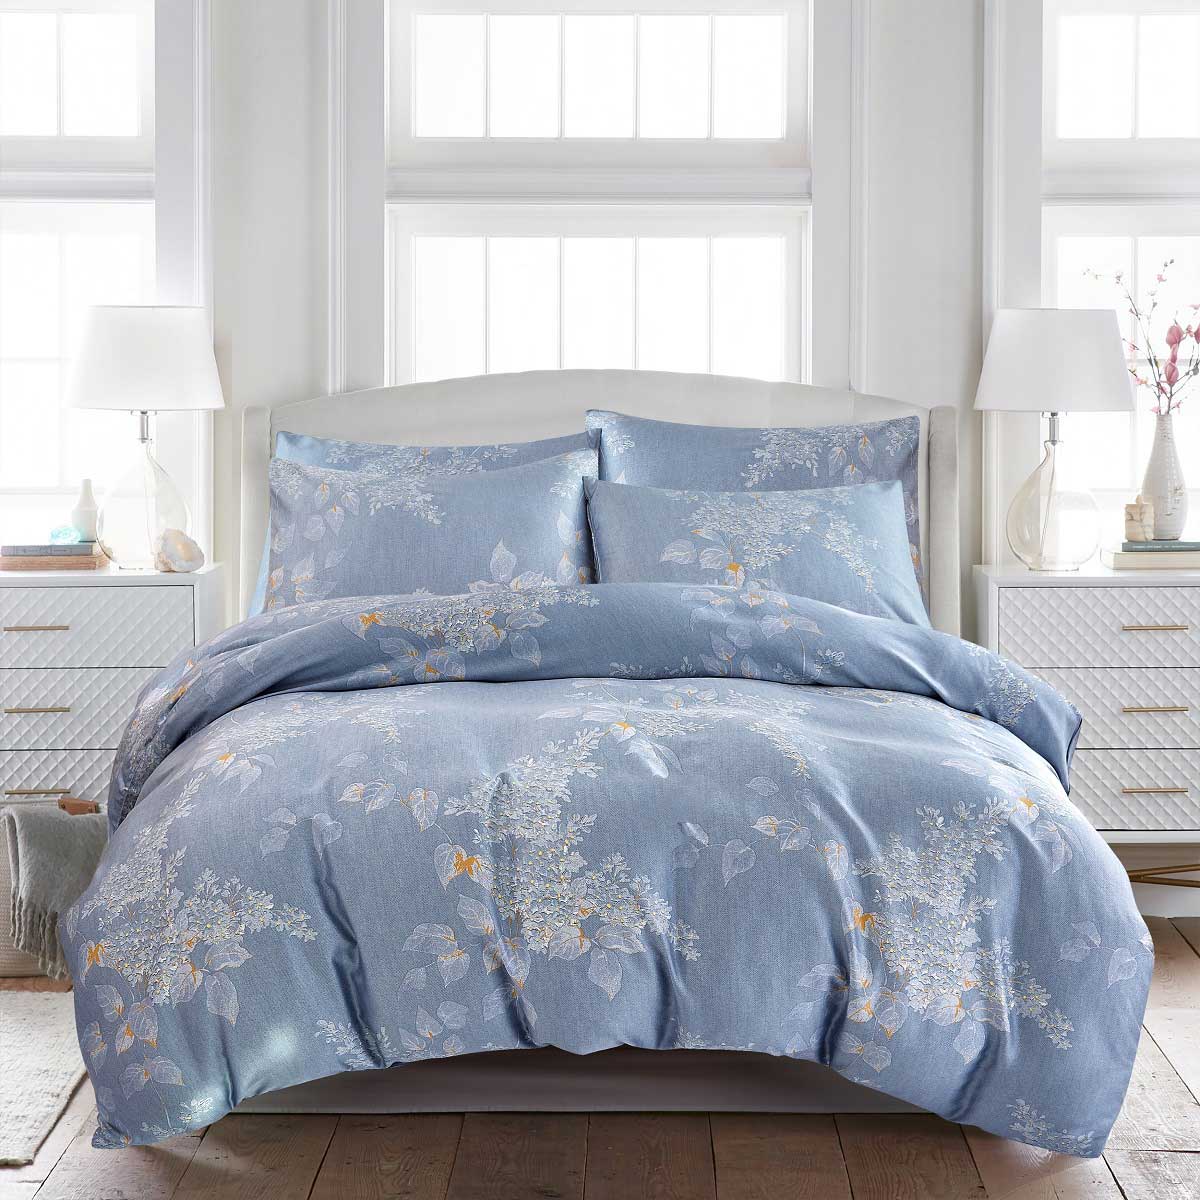 Комплект постельного белья 1,5-спальный Pappel leaves on blue комплект постельного белья семейный pappel leaves on blue